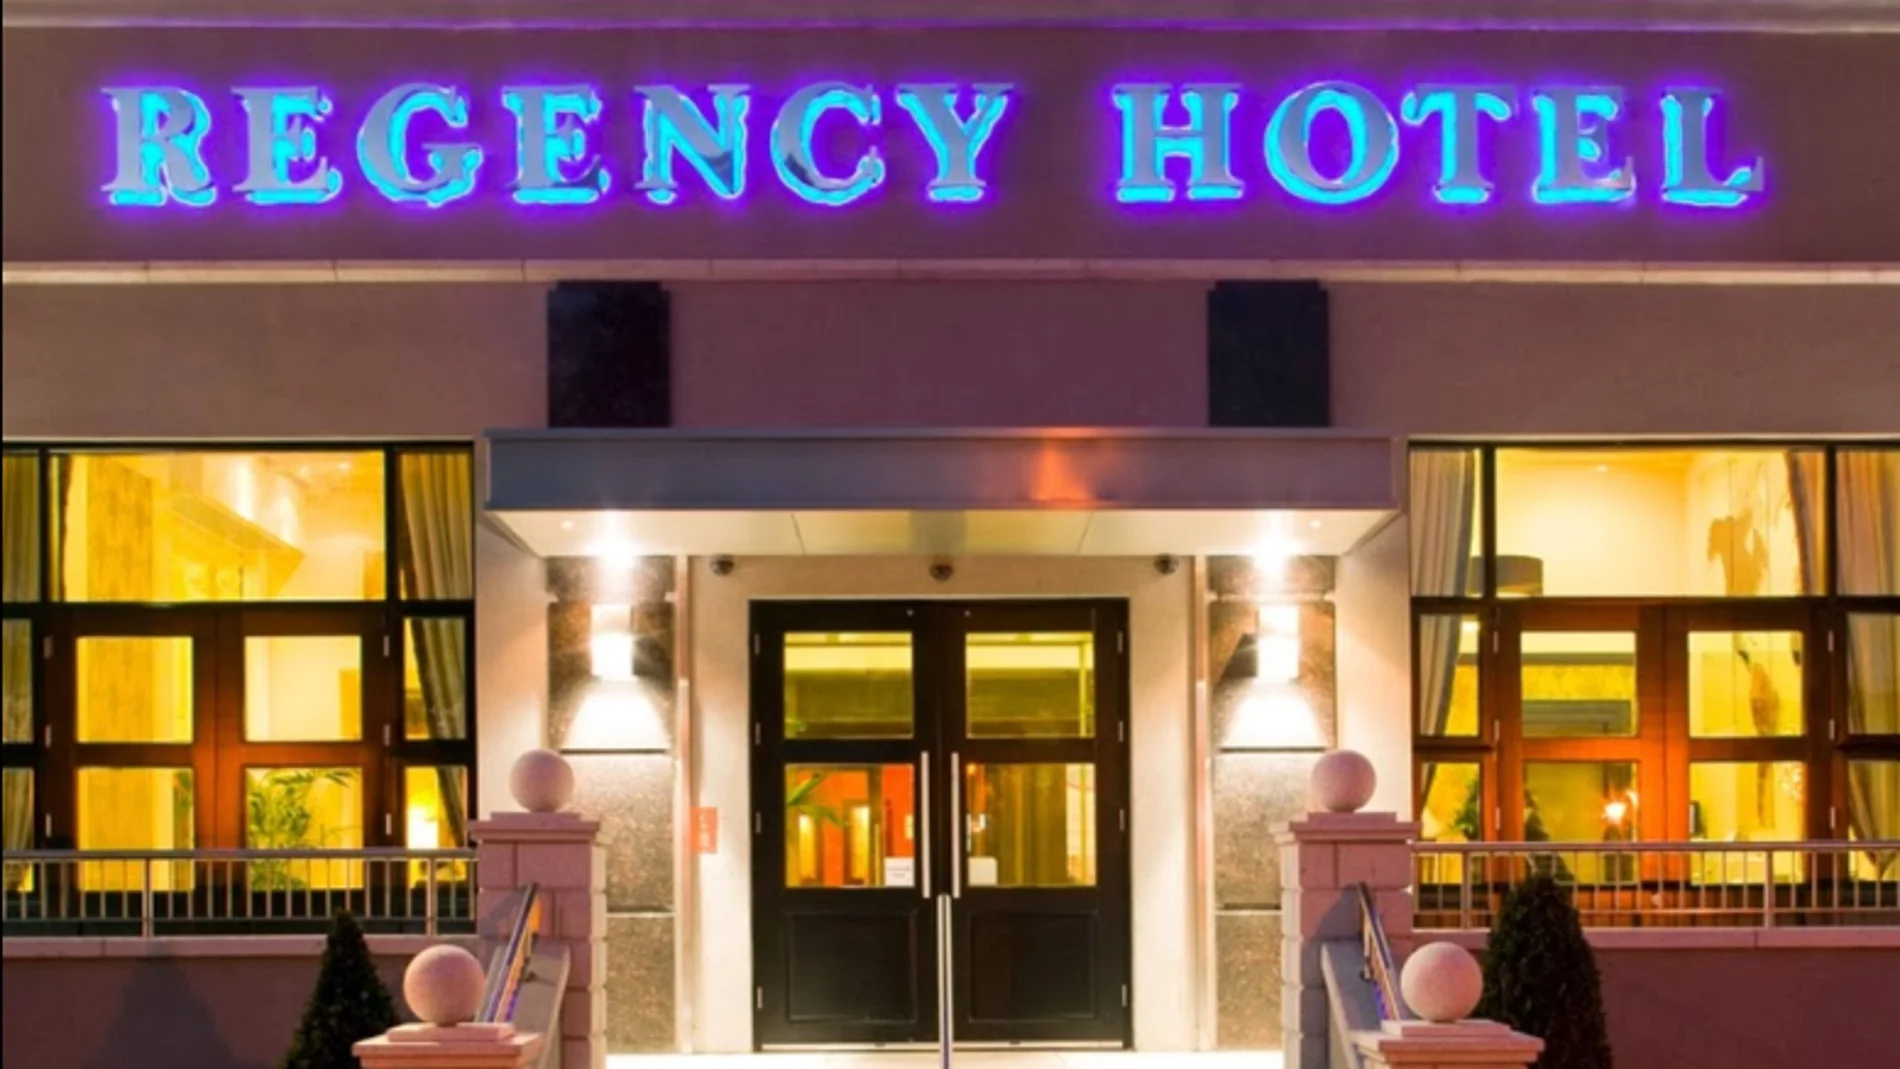 Regency Hotel de Dublin, donde ha tenido lugar el tiroteo